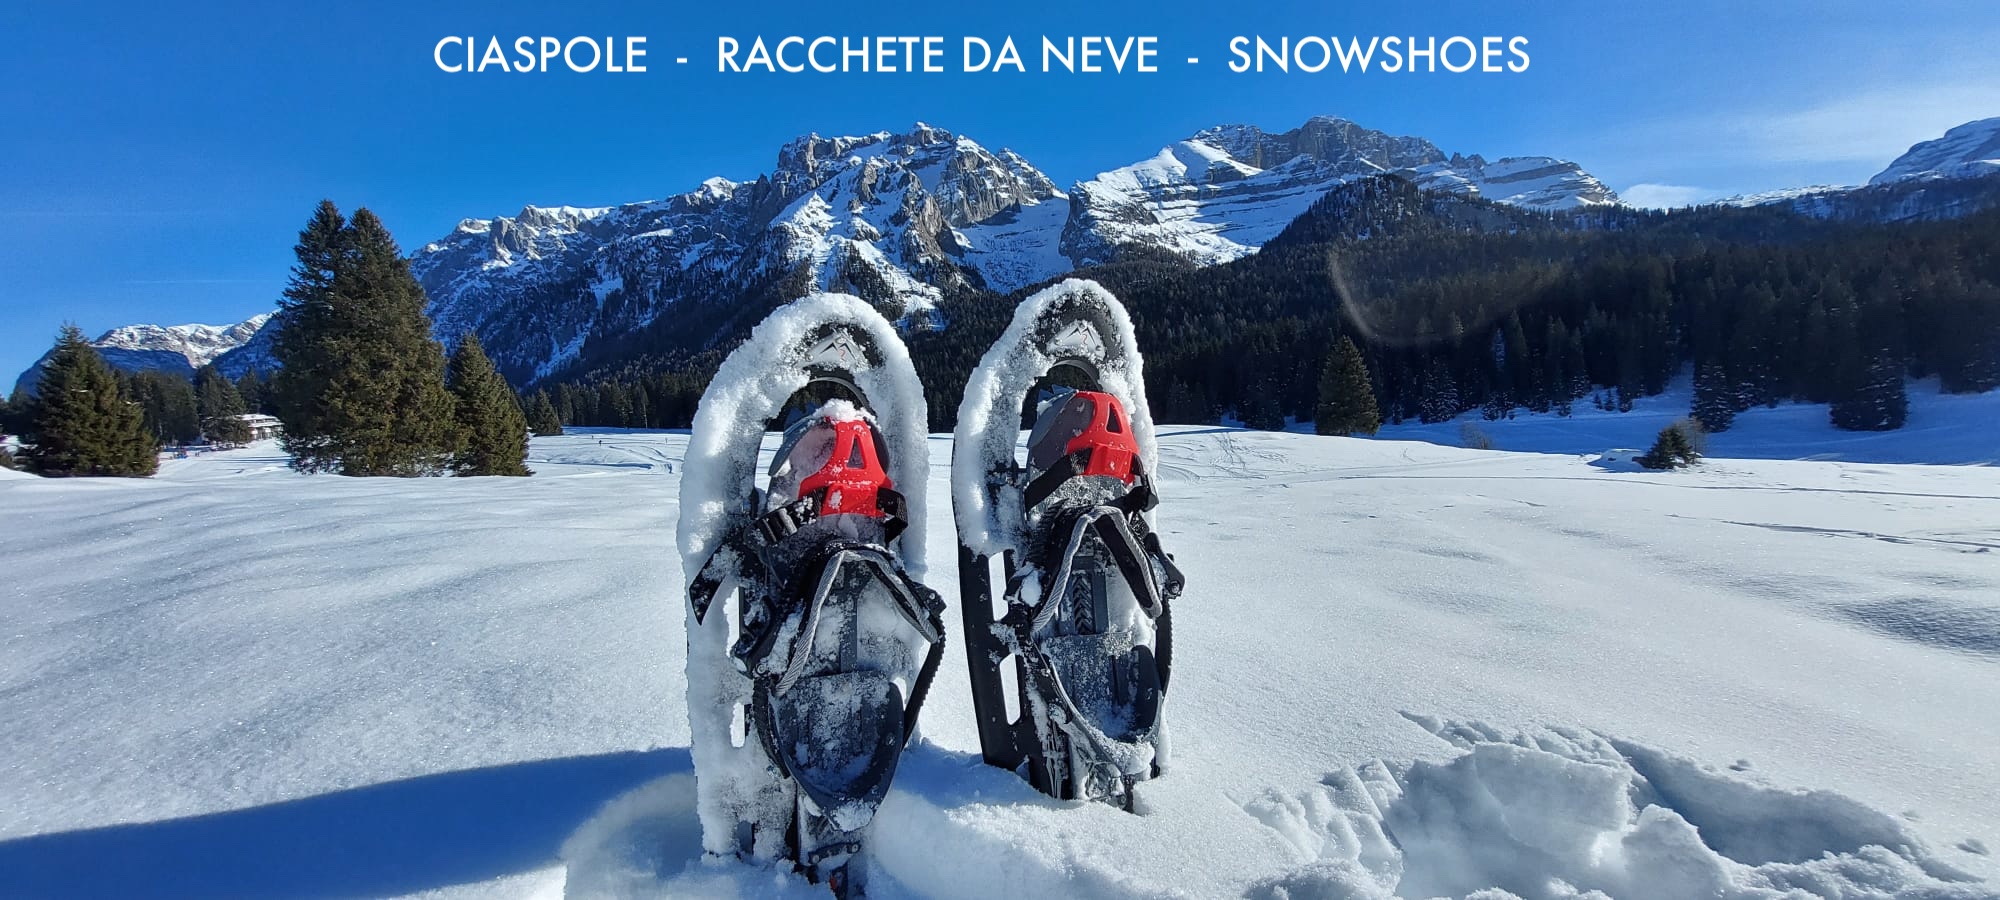 CIASPOLE -RACCHETTE DA NEVE – SNOWSHOES